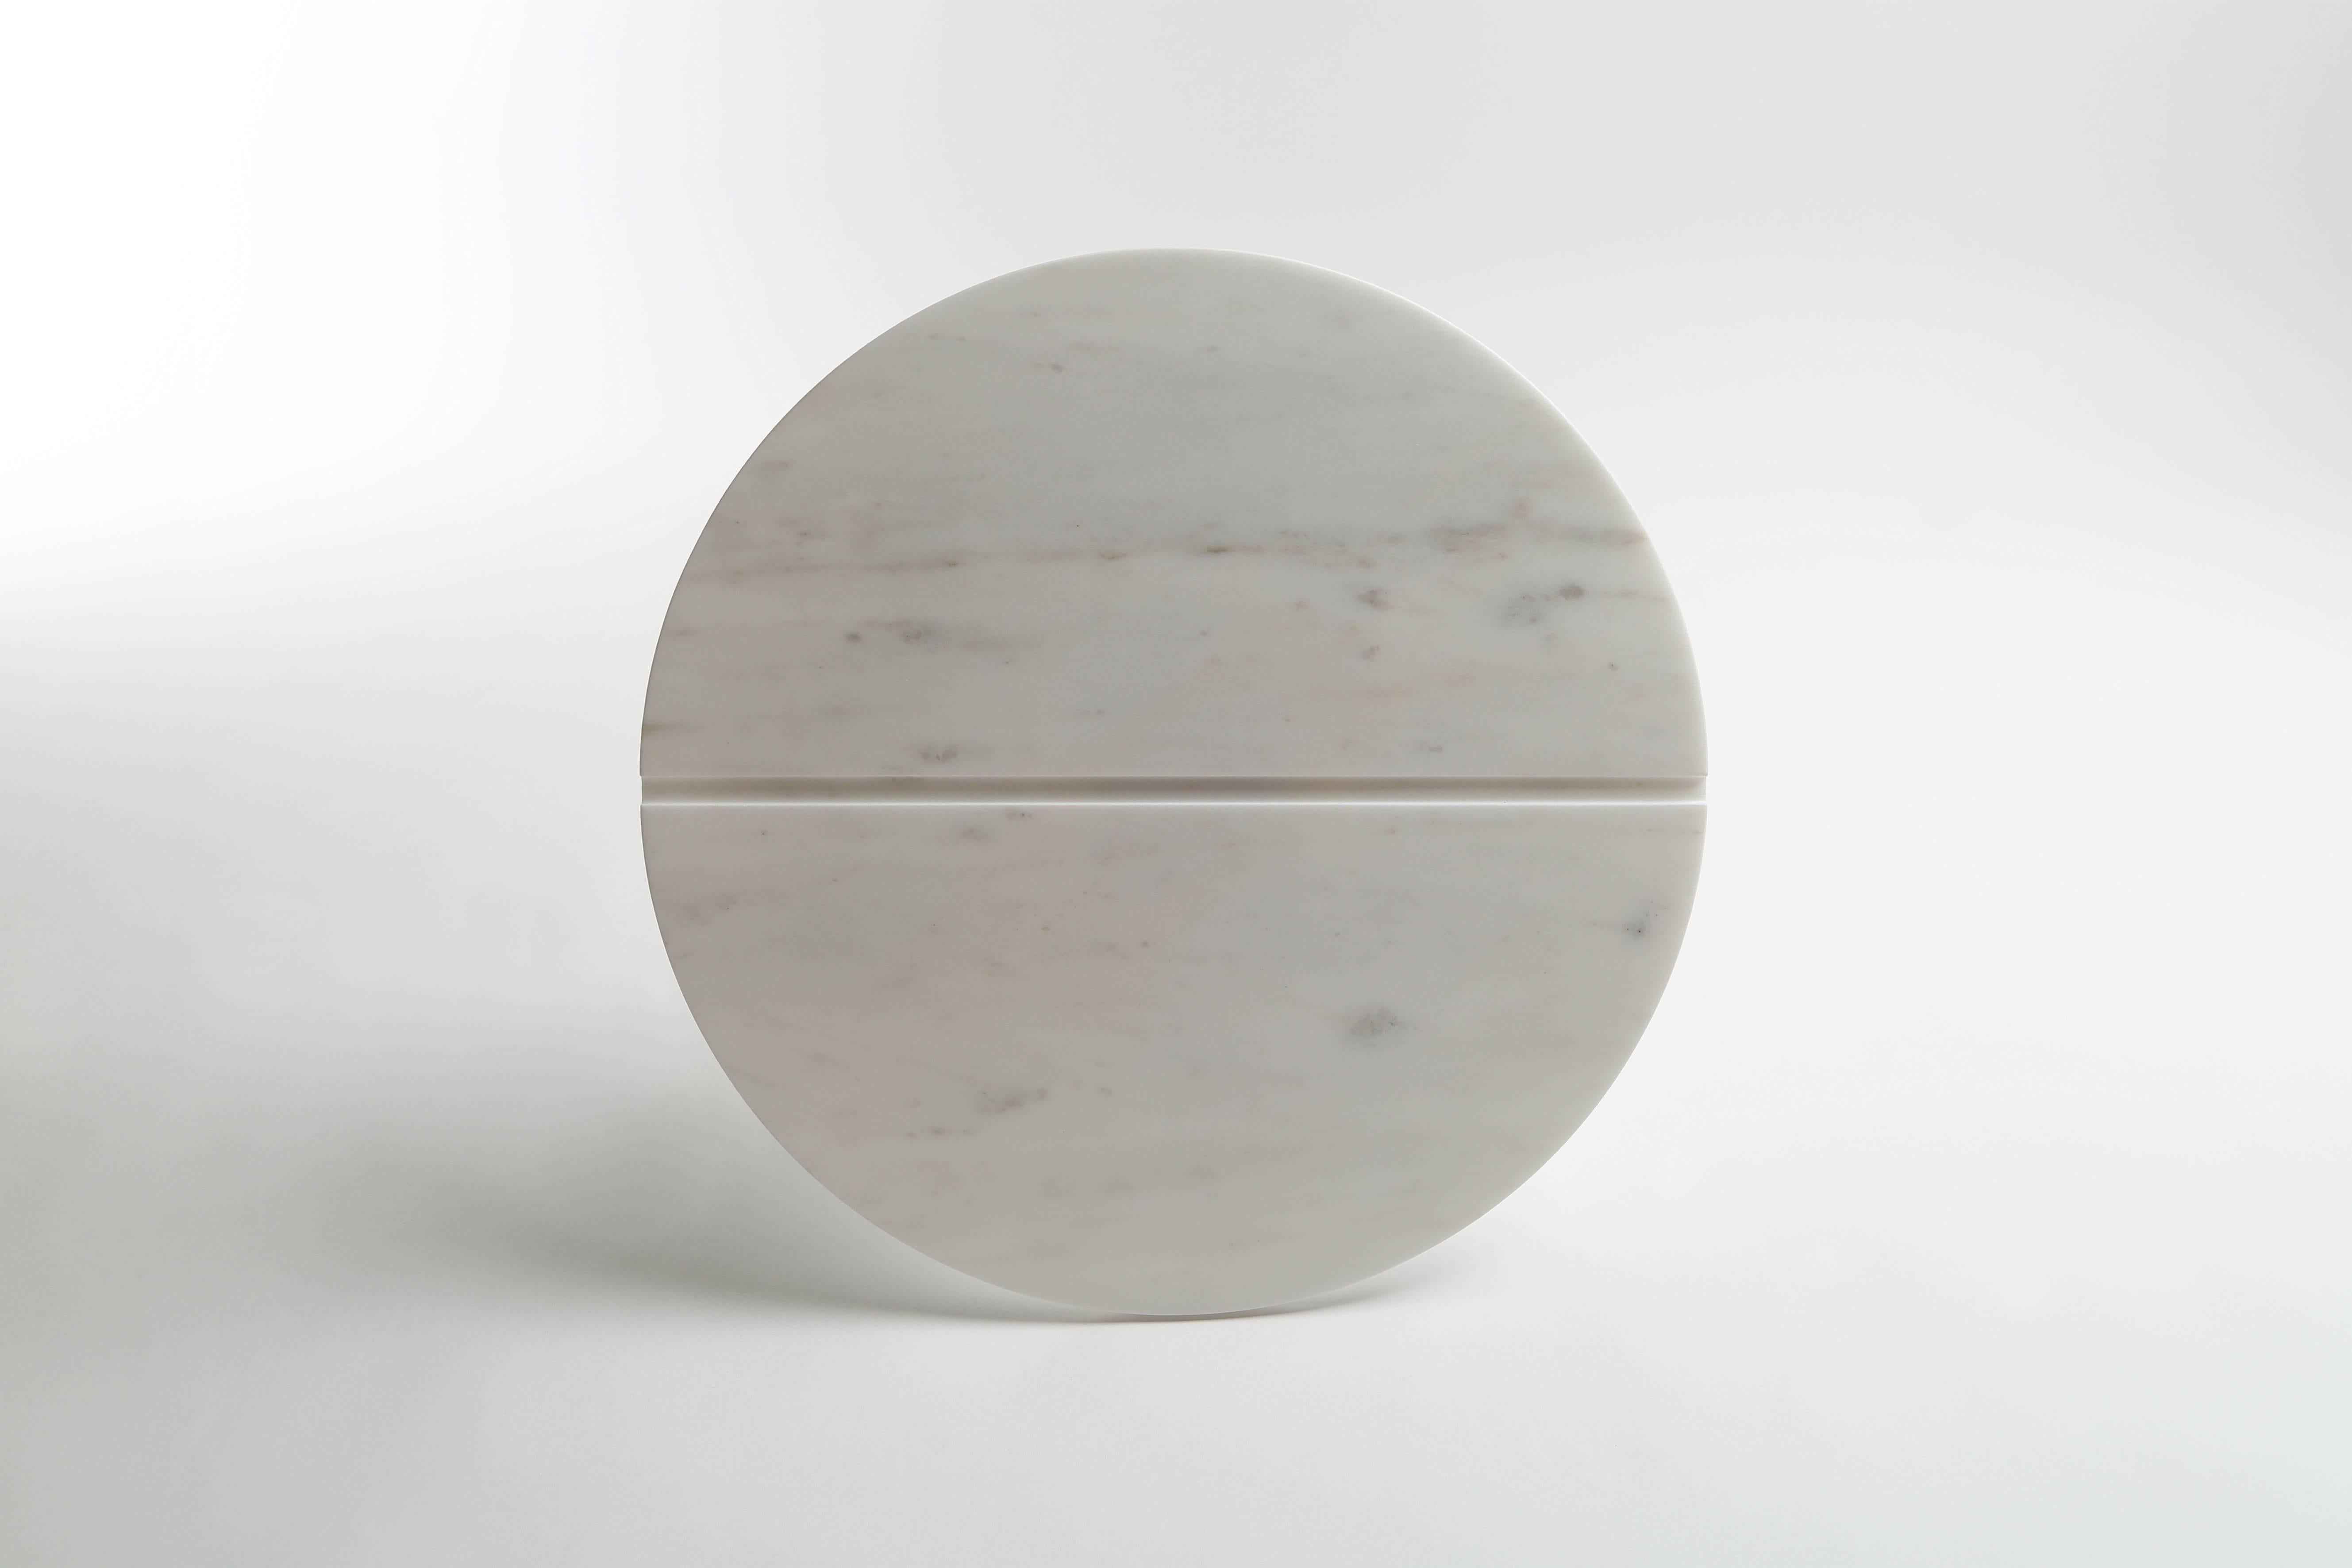 Table d'appoint du designer libanais Richard Yasmine
Version marbre (version métal également disponible)

Mesures : 44 cm de hauteur, 40 cm de diamètre au sommet
(17.3 x 15.8 in)


Cette table conçue par Richard Yasmine est nommée 